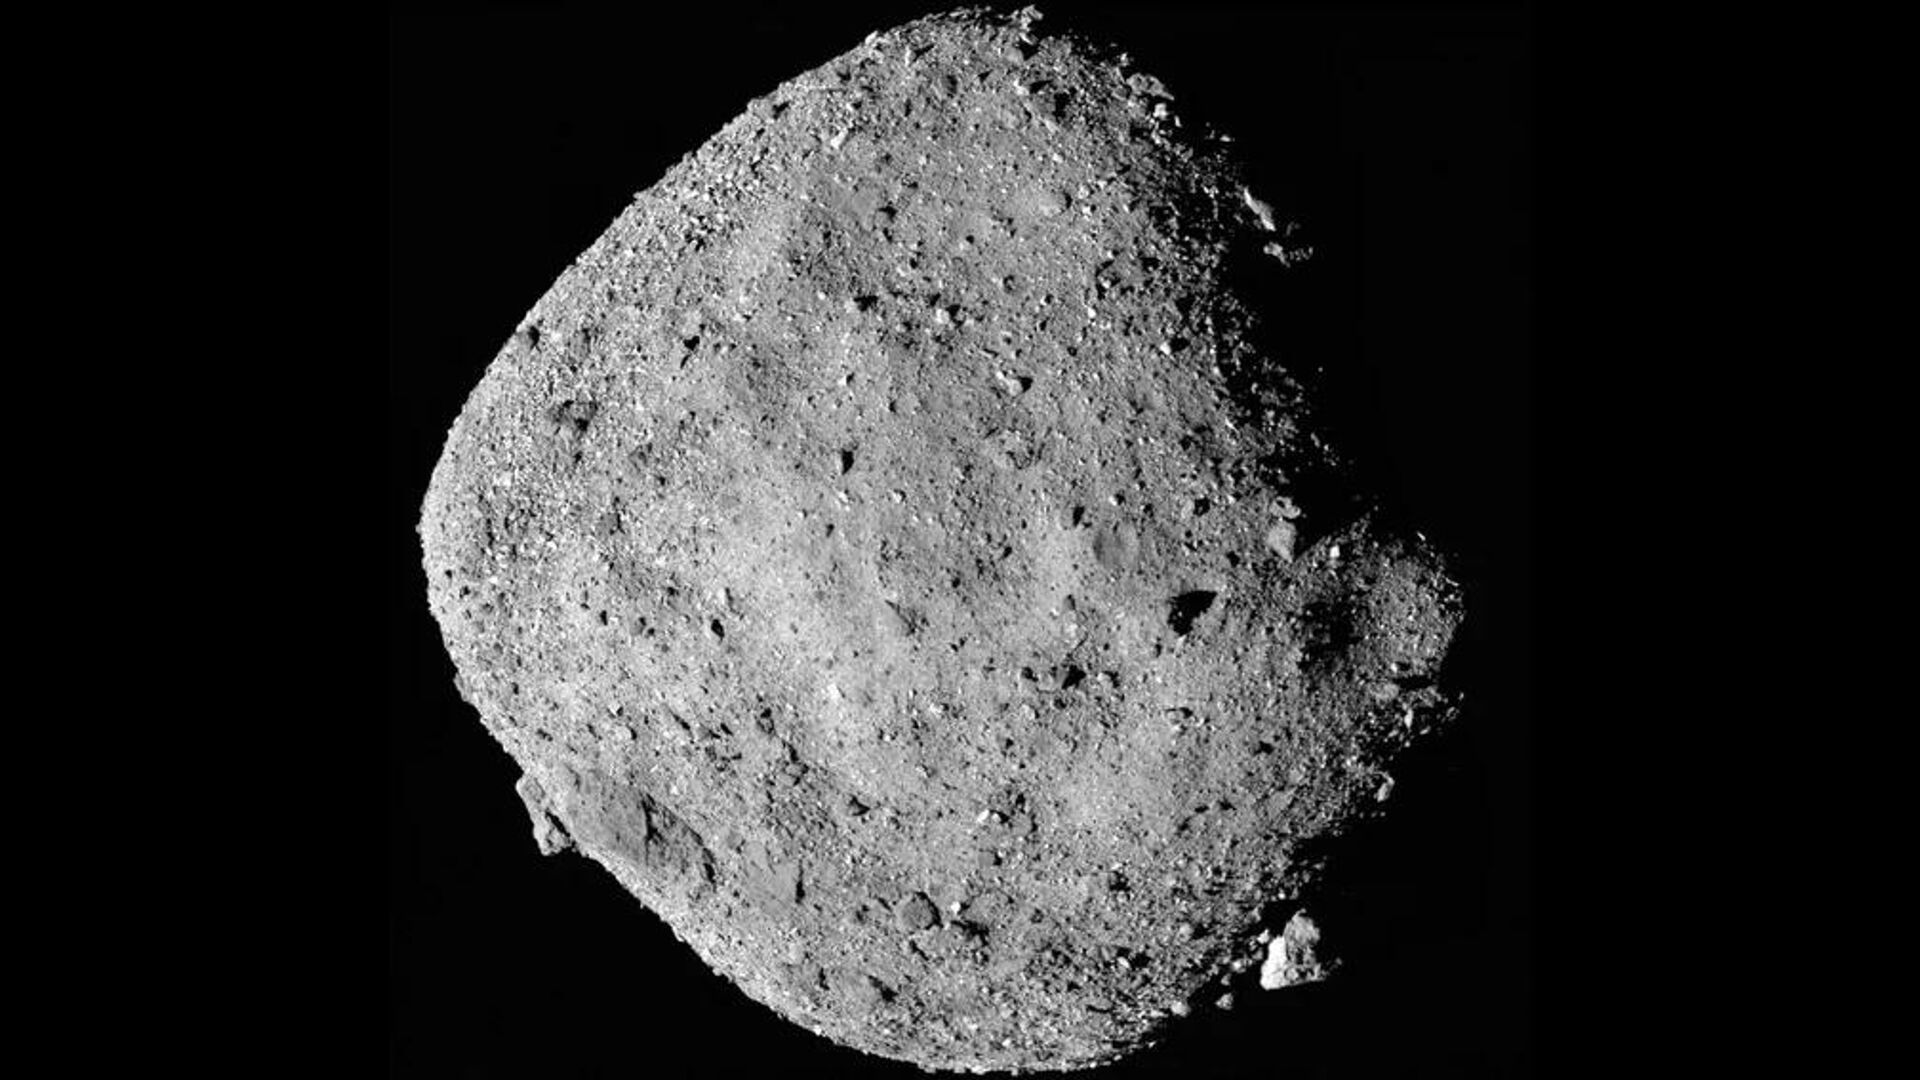 Фото астероида Бенну, сделанное 2 декабря 2018-го аппаратом НАСА OSIRIS-REx с расстояния 24 километра - Sputnik Армения, 1920, 16.06.2022